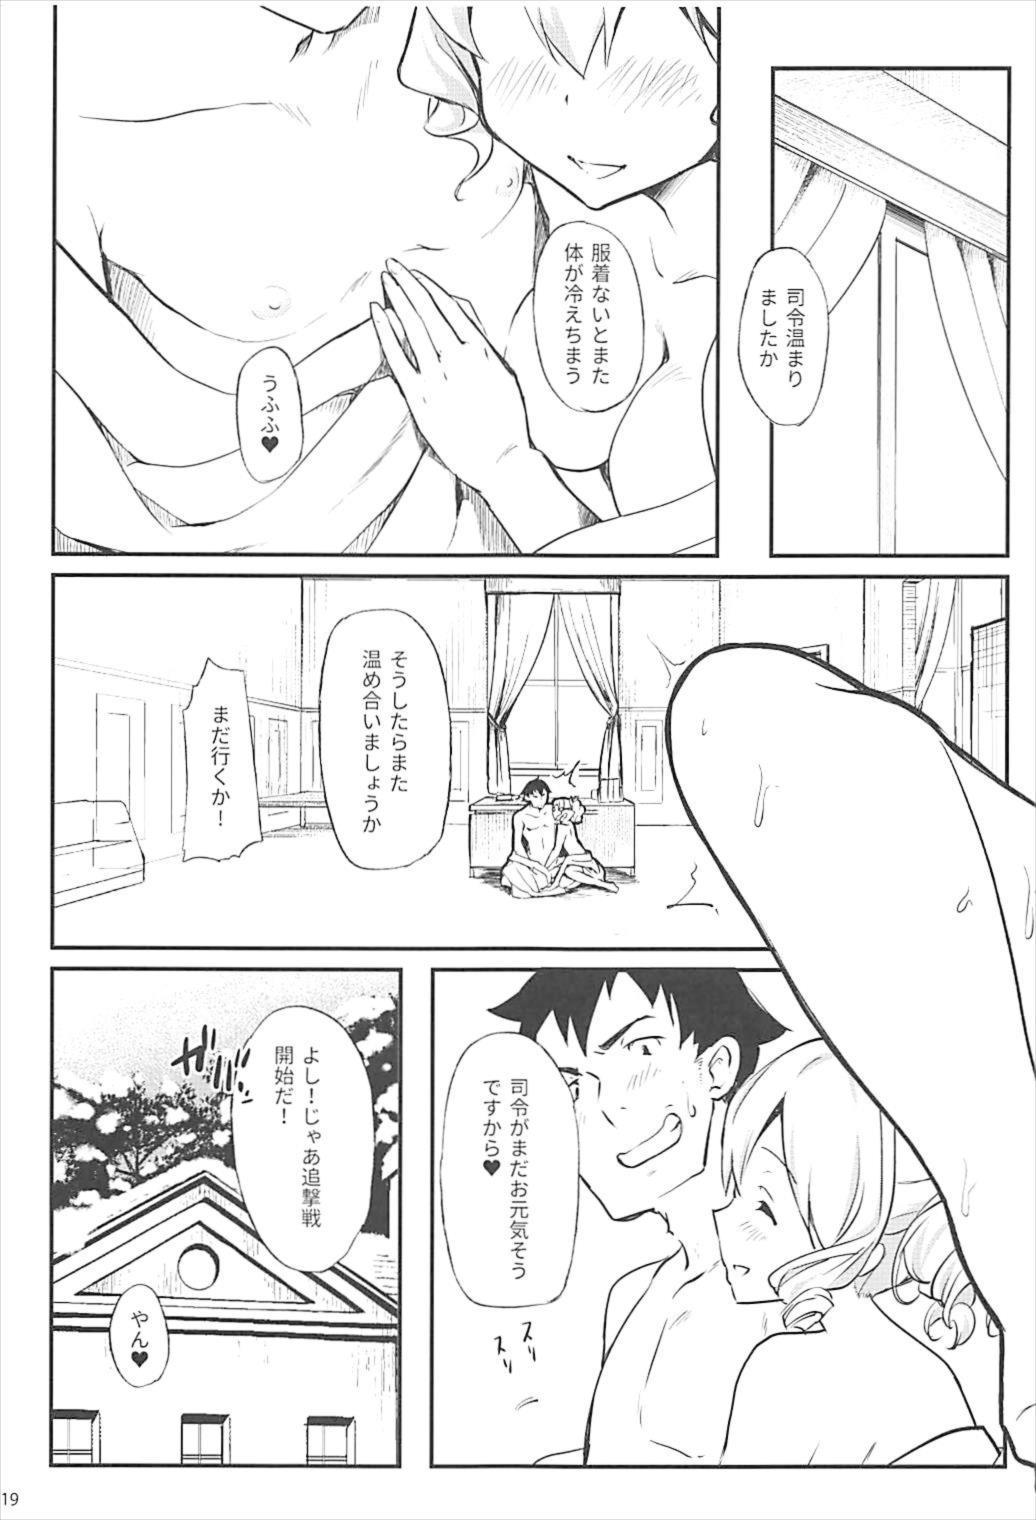 Petite Teen Hatakaze ga Tsutome sasete Itadakimasu - Kantai collection Verification - Page 20